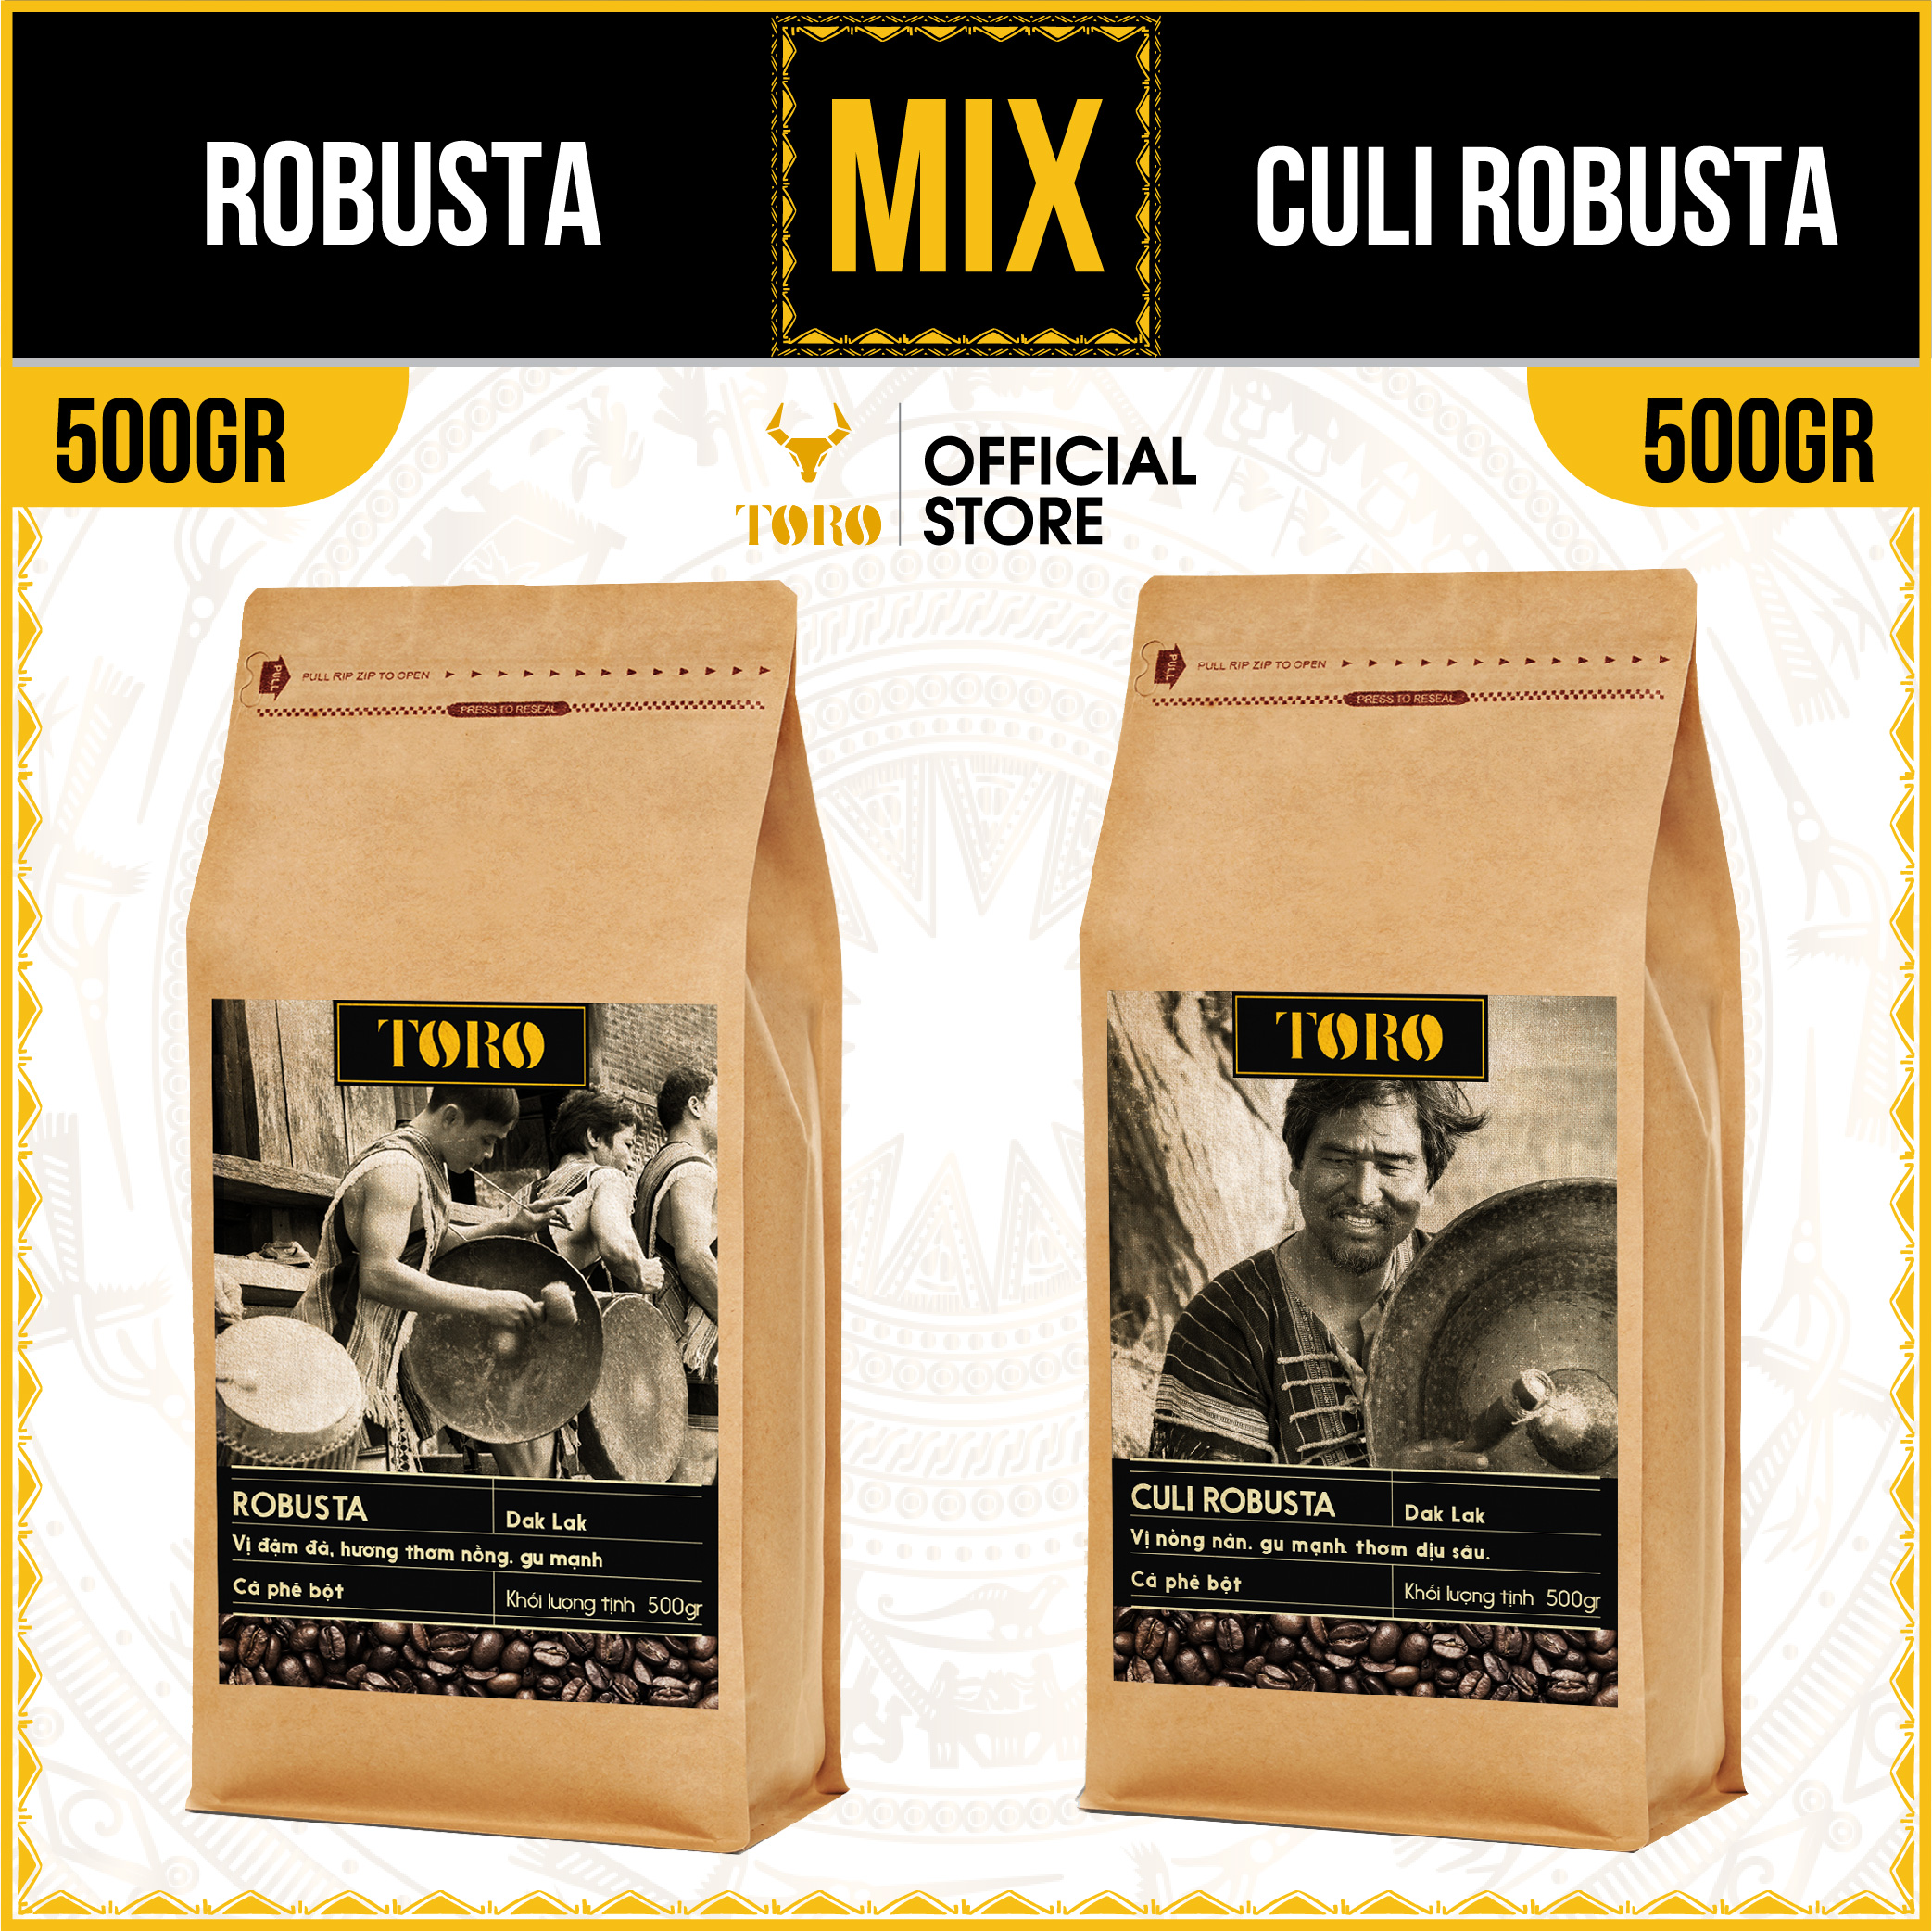 1KG Bộ Mix Cà Phê Bột Toro Robusta & Culi Robusta Nguyên Chất 100% 500GR